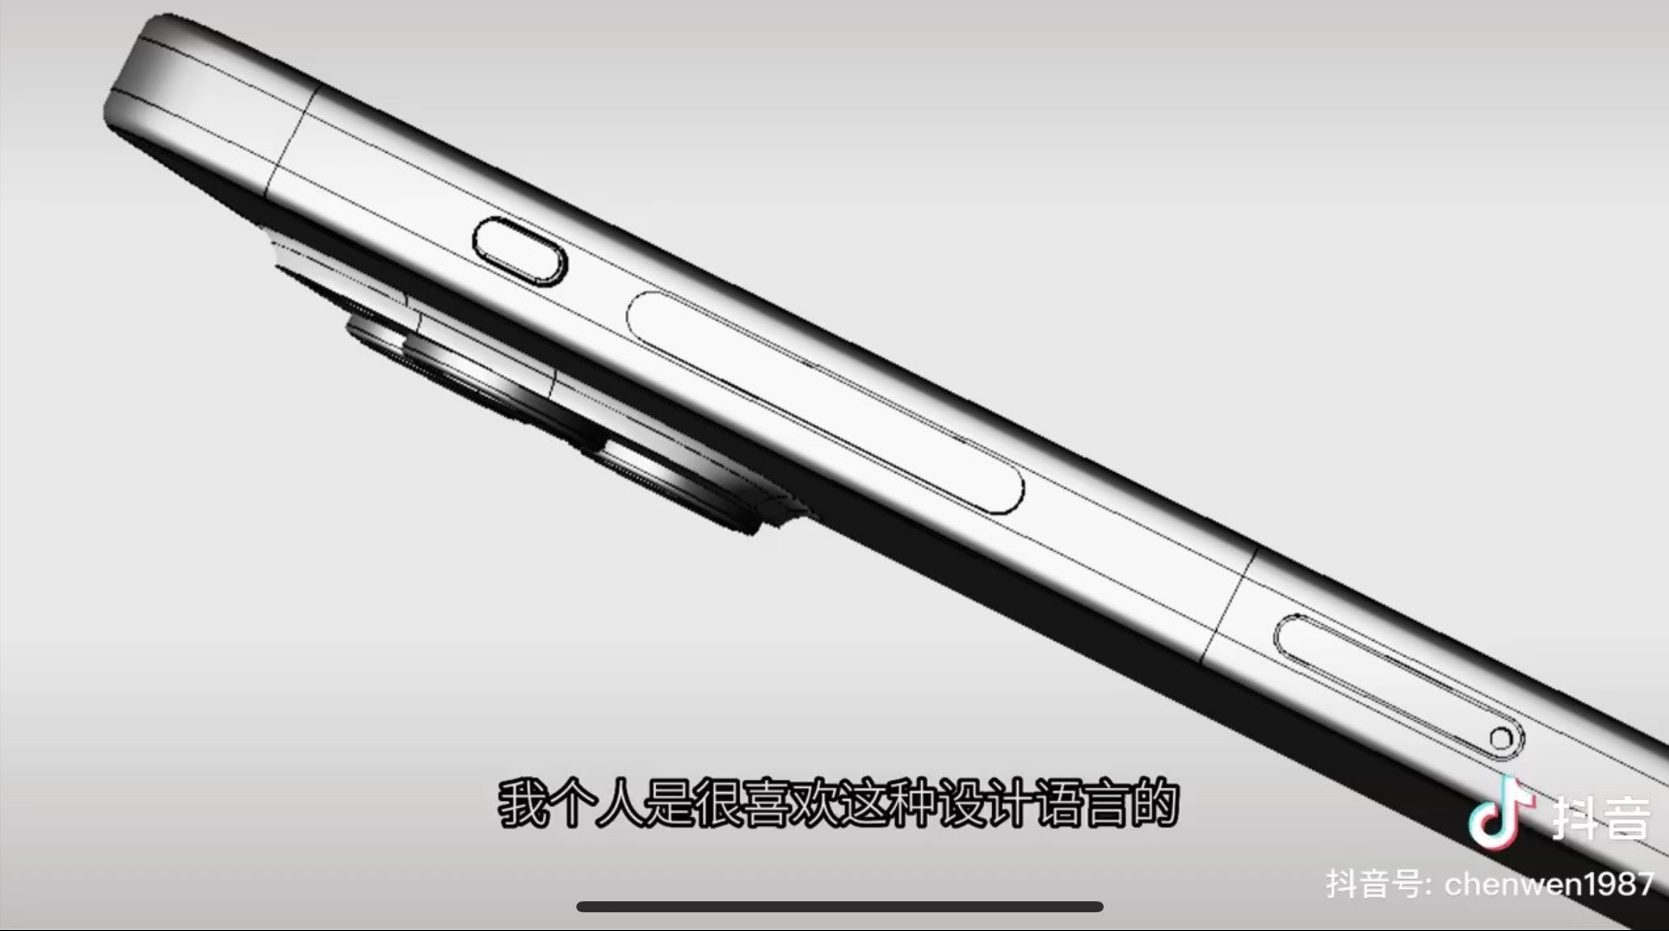 Imagen CAD del iPhone 15 Pro mostrando un botón de volumen unificado y un interruptor de silencio que, por primera vez, es un botón